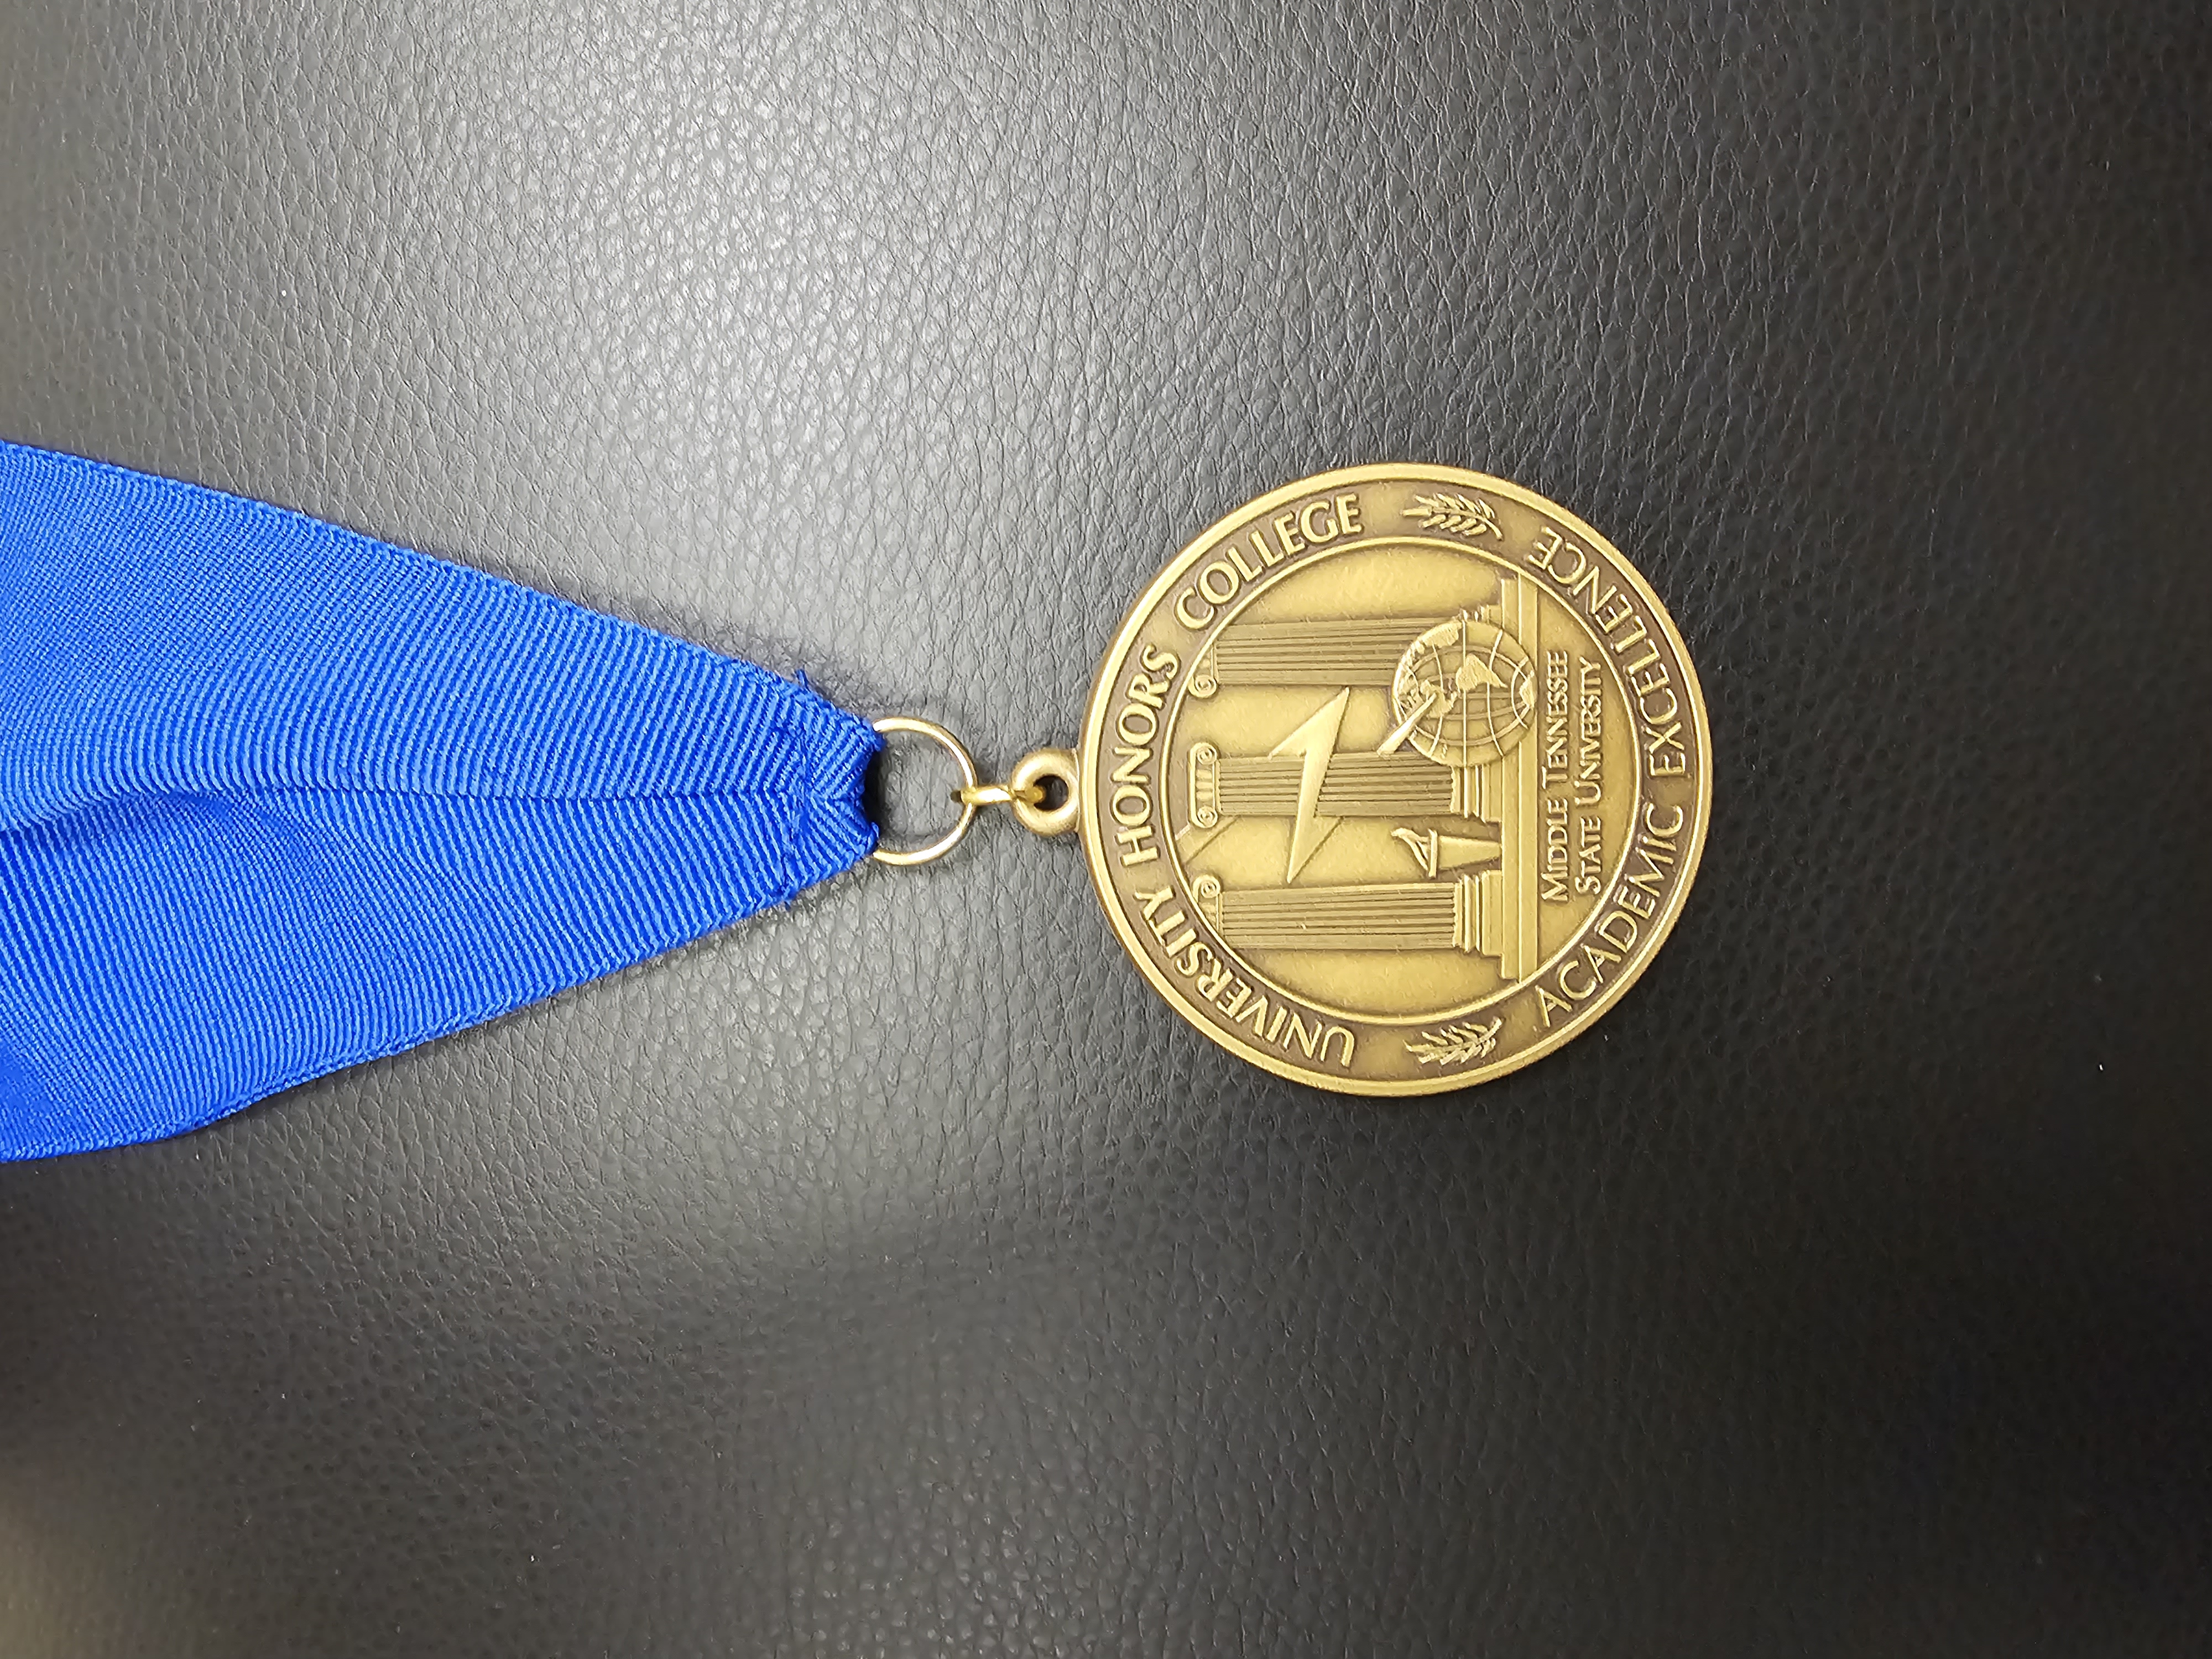 Honors Medallion